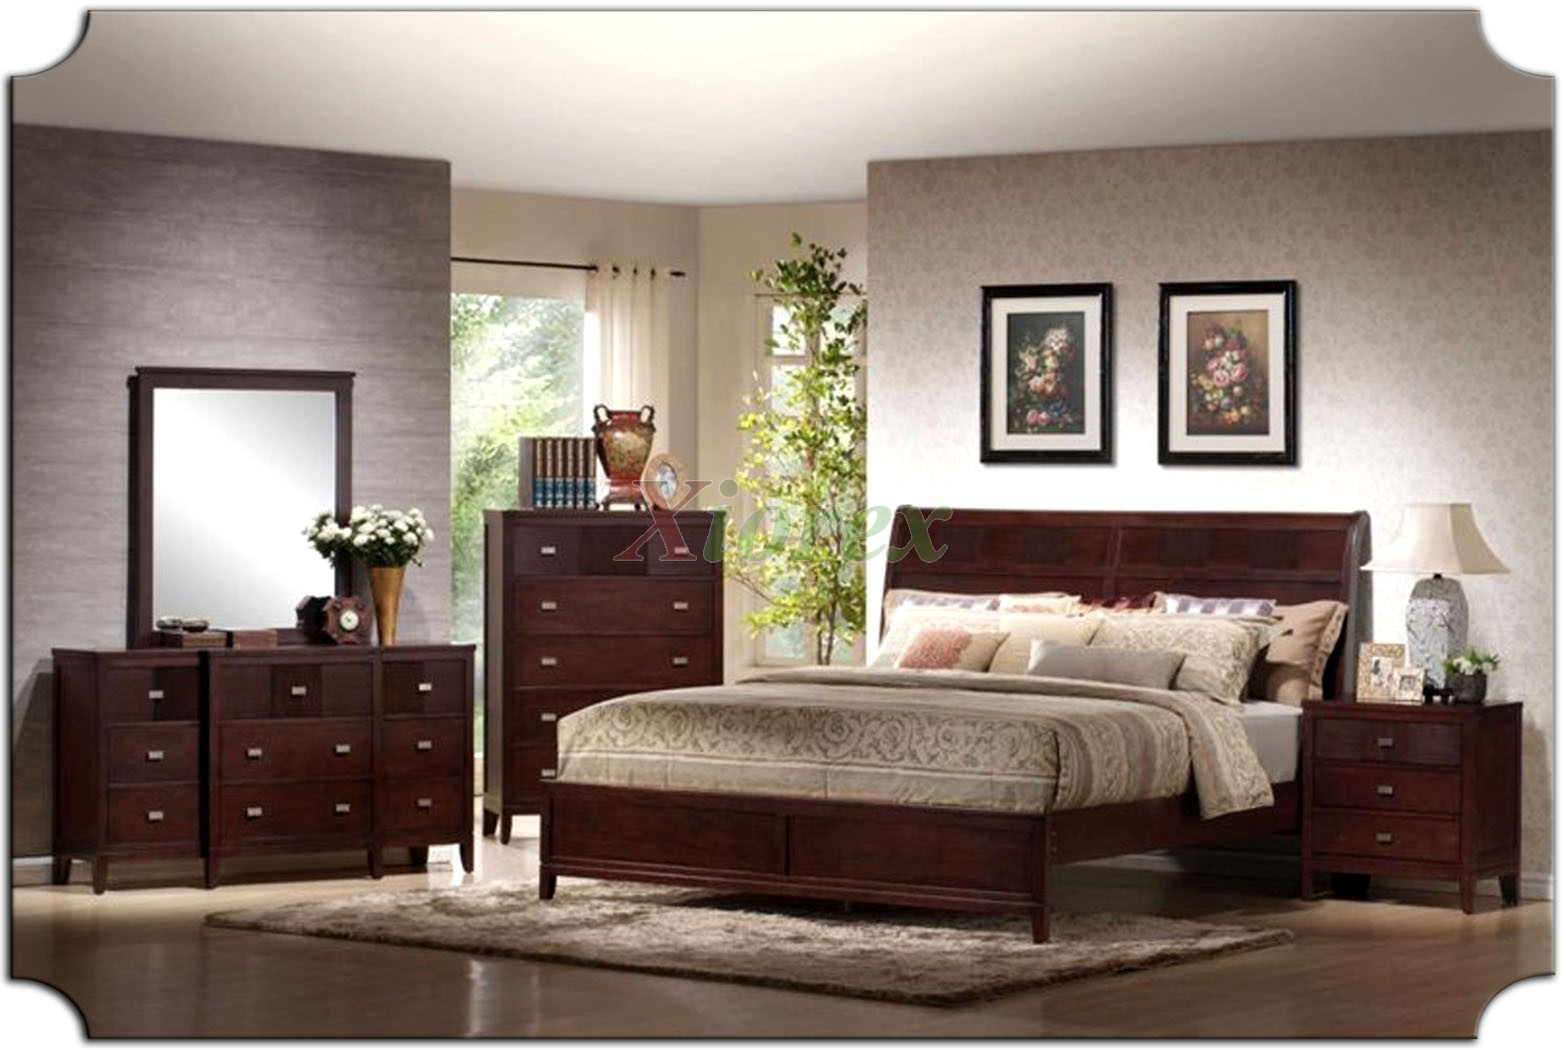 bedroom furniture sets platform bedroom furniture set with curved headboard beds 167 | xiorex JKLHASJ